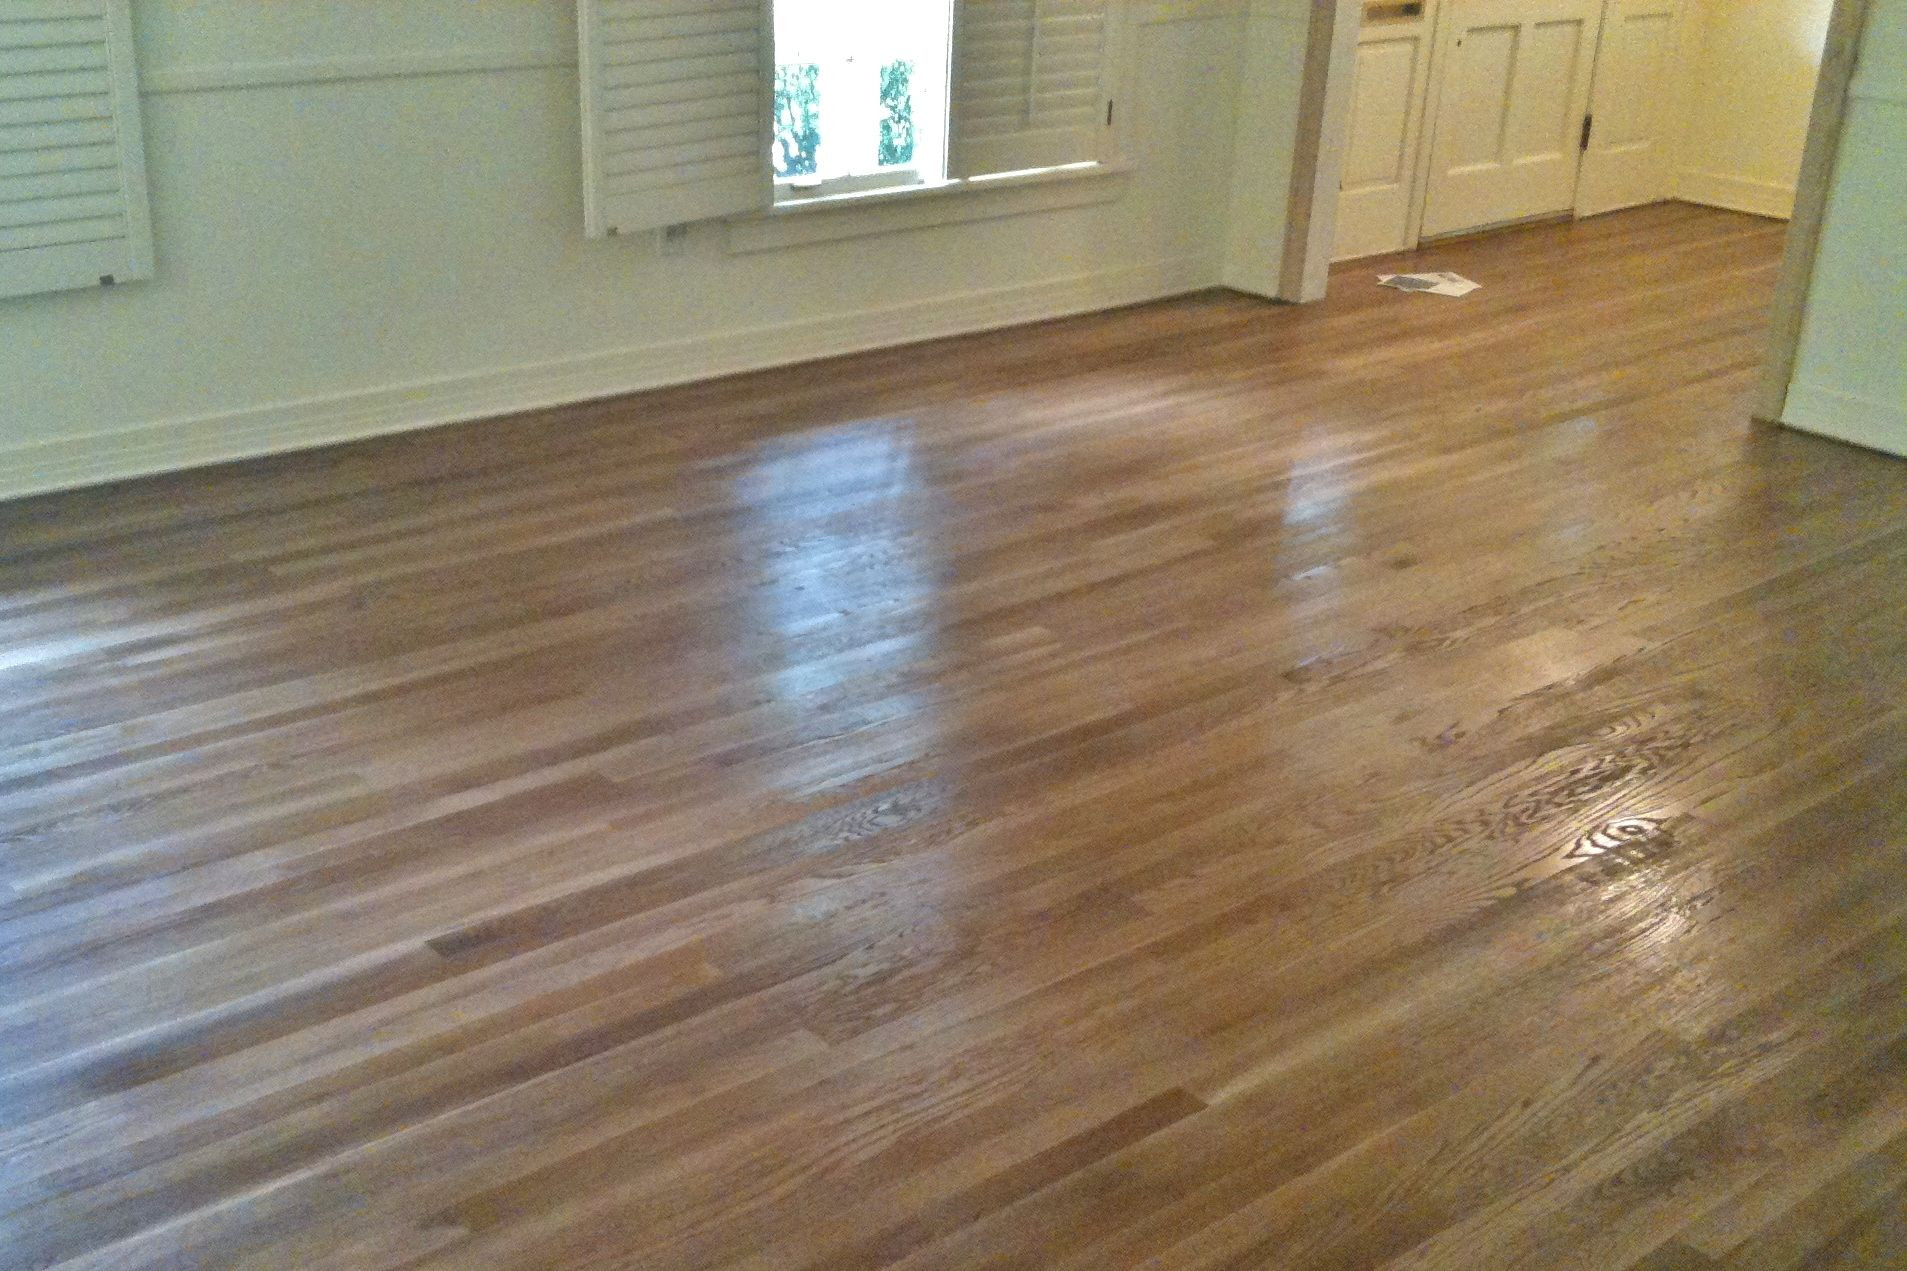 how to pick hardwood floor color of oak meet special walnut home design pinterest flooring throughout minwax special walnut stain on oak hardwood floors